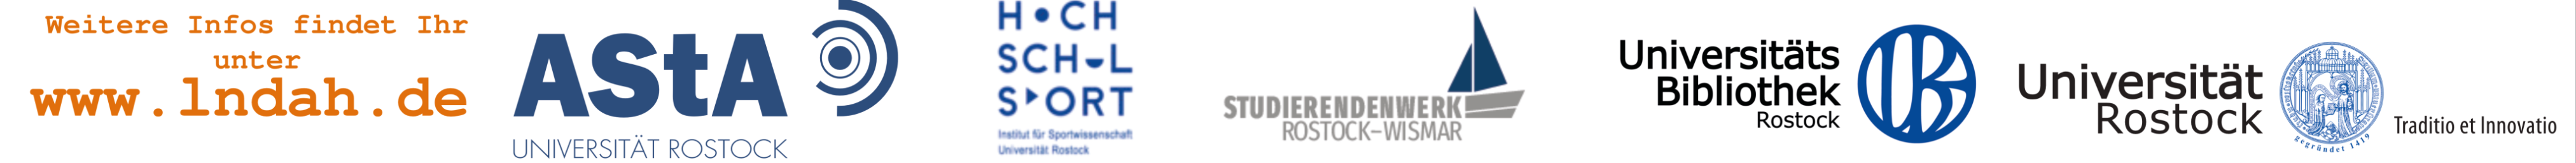 Unterstützt durch: AStA der Universität Rostock, Universität Rostock, Universitätsbibliothek Rostock, Studierendenwerk Rostock-Wismar, Hochschlsport Uni Rostock